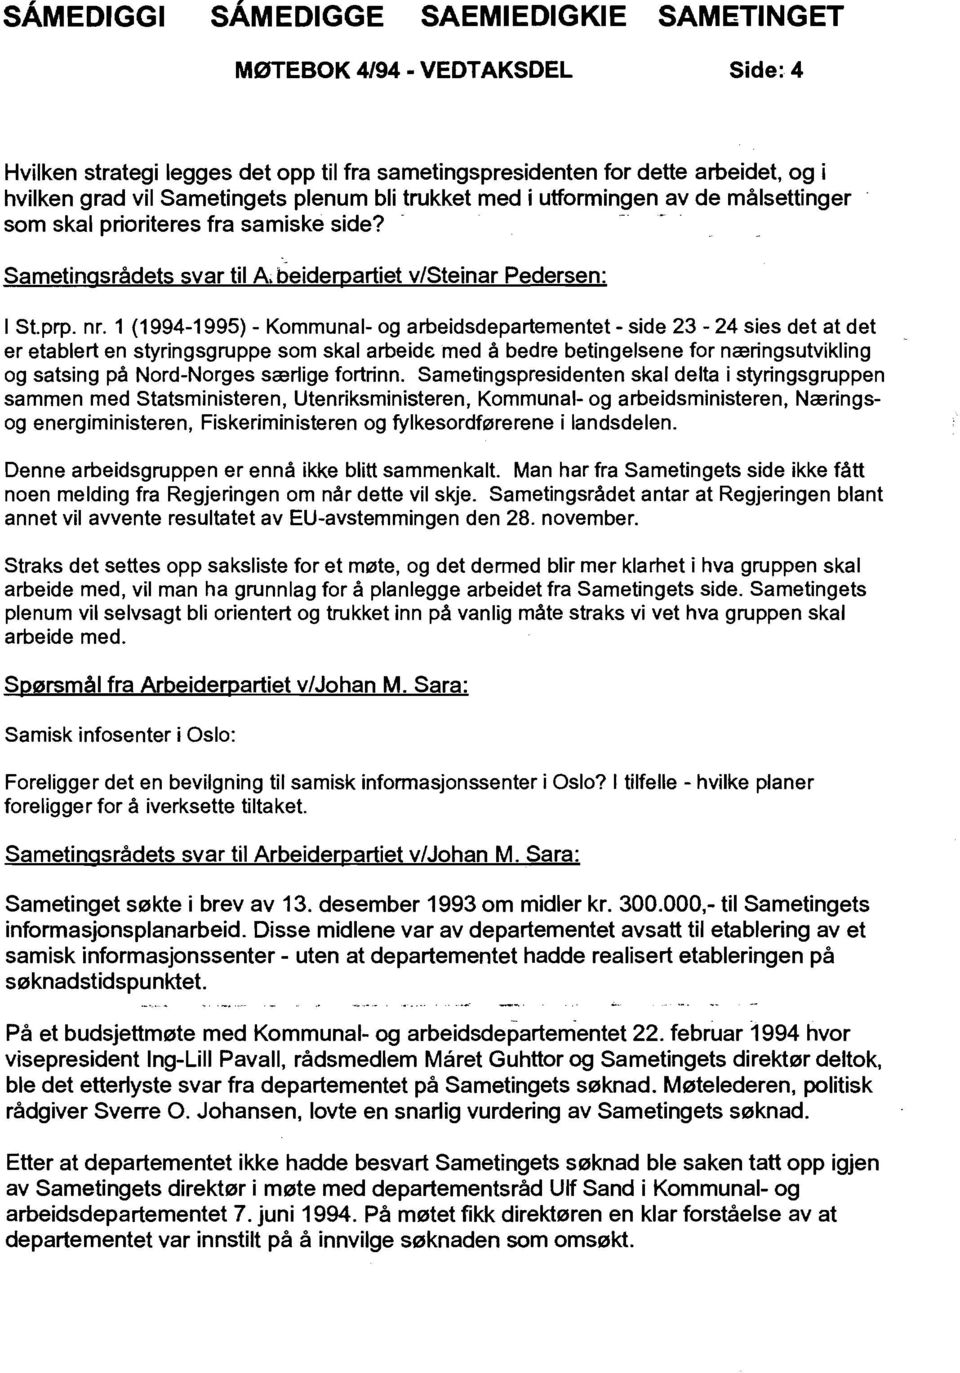 1 (1994-1995) - Kommunal- og arbeidsdepartementet - side 23-24 sies det at det er etablert en styringsgruppe som skal arbeide med å bedre betingelsene for næringsutvikling og satsing på Nord-Norges